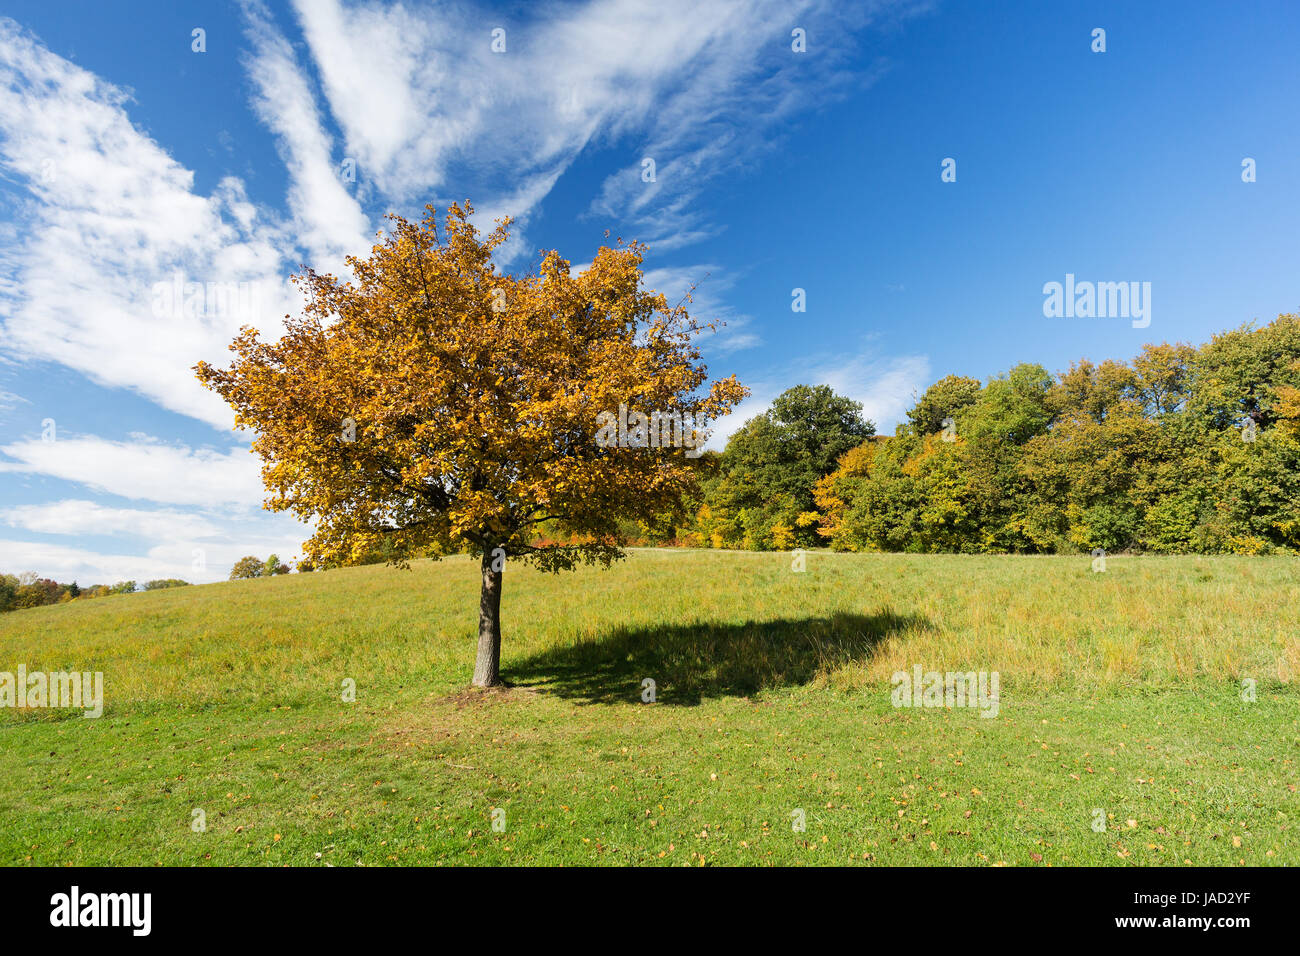 Landschaft im Herbst, einsamer Baum im Vordergrund mit herbstlichem Wald Foto Stock